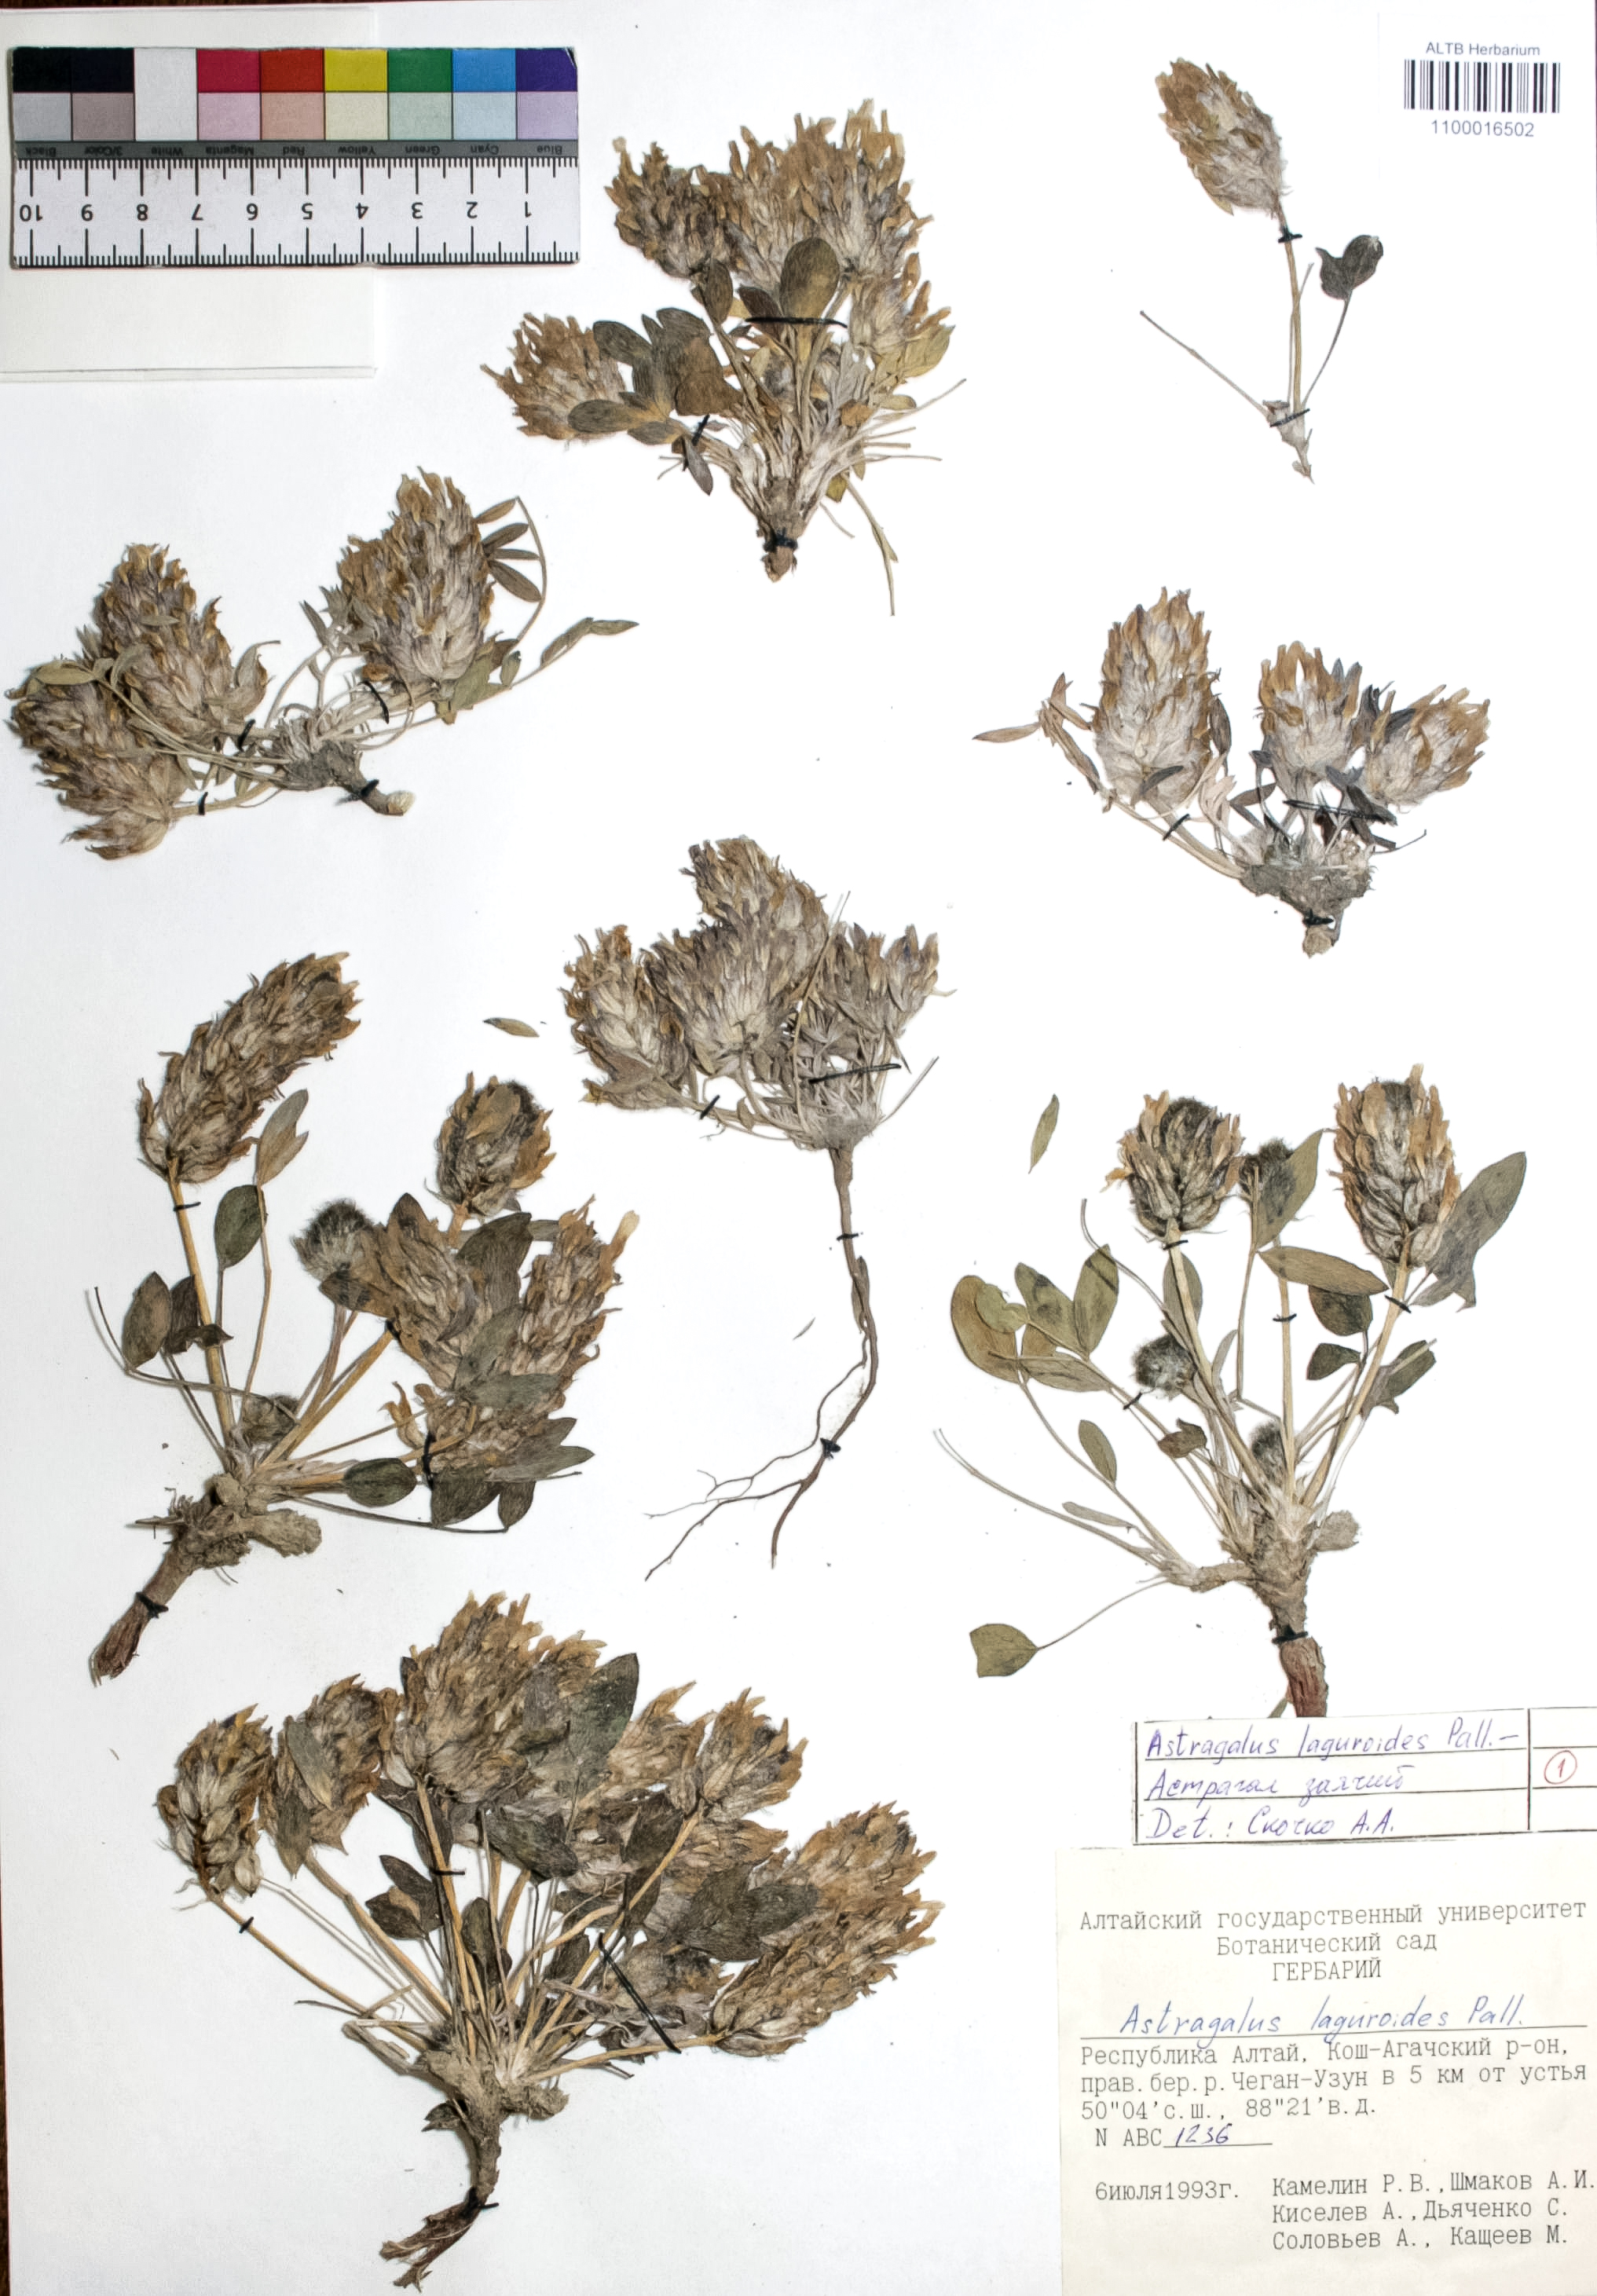 Astragalus laguroides Pall.